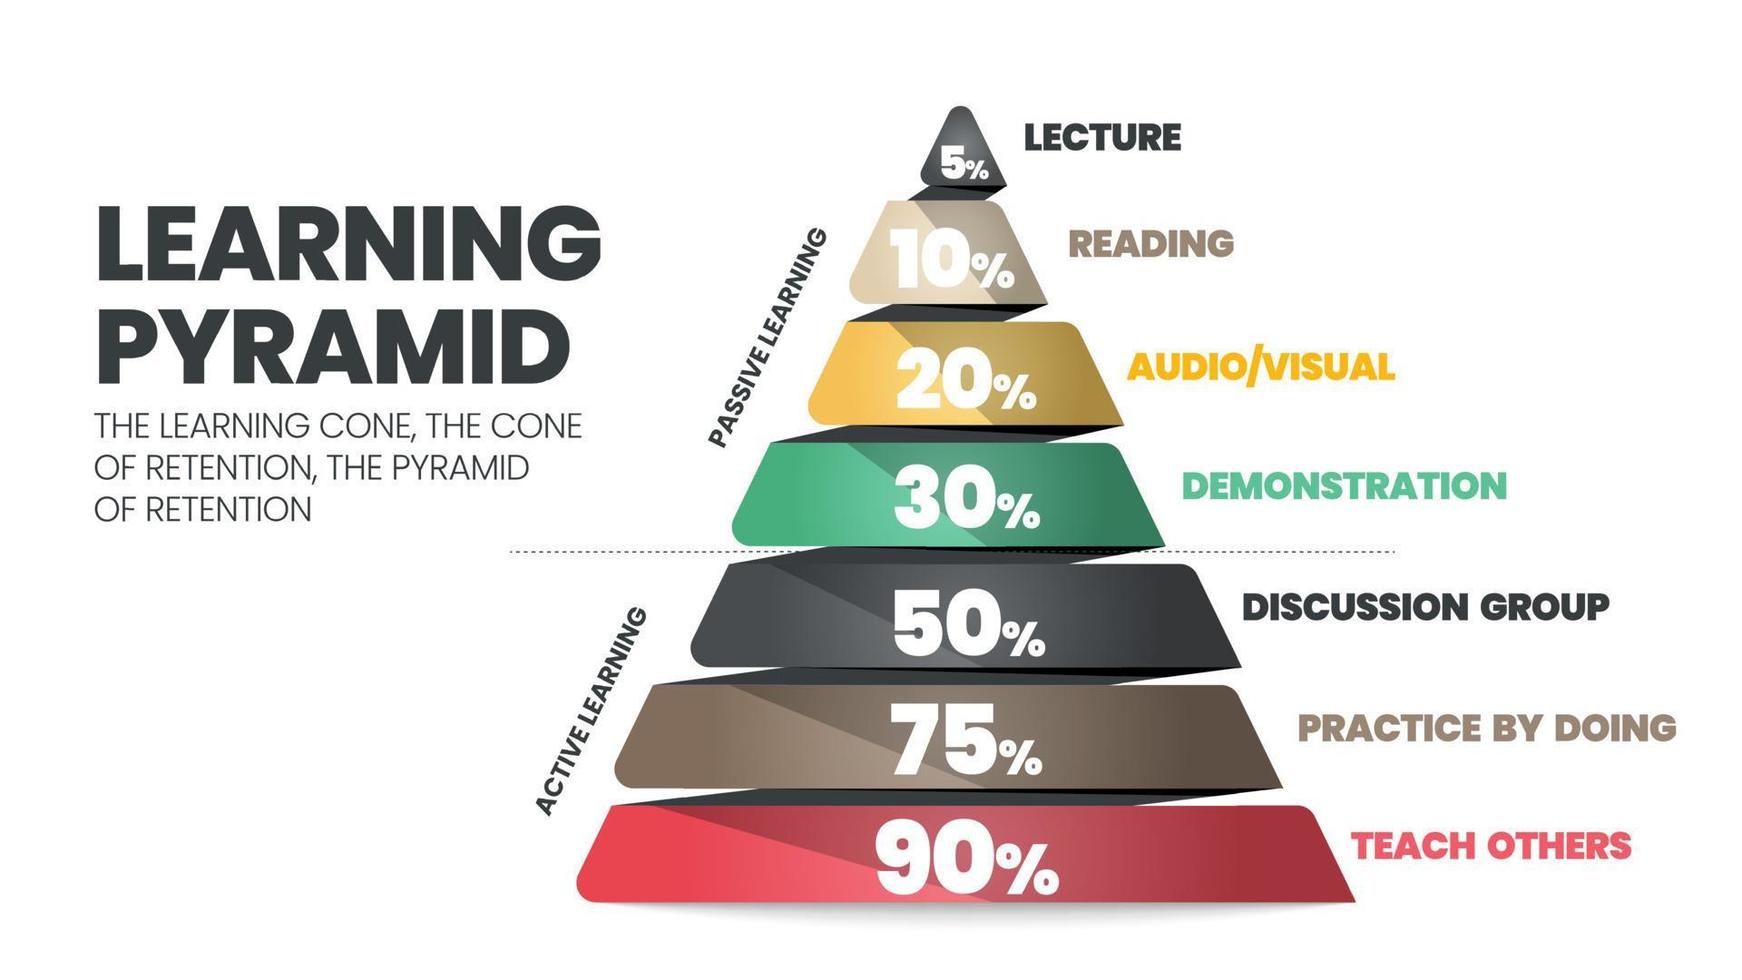 il vettore infografico della piramide dell'apprendimento si riferisce al cono o rettangolo che gli studenti ricordano per 10 di ciò che leggono come passivo. ciò che imparano attraverso l'insegnamento attivo guadagna un altro discente 90